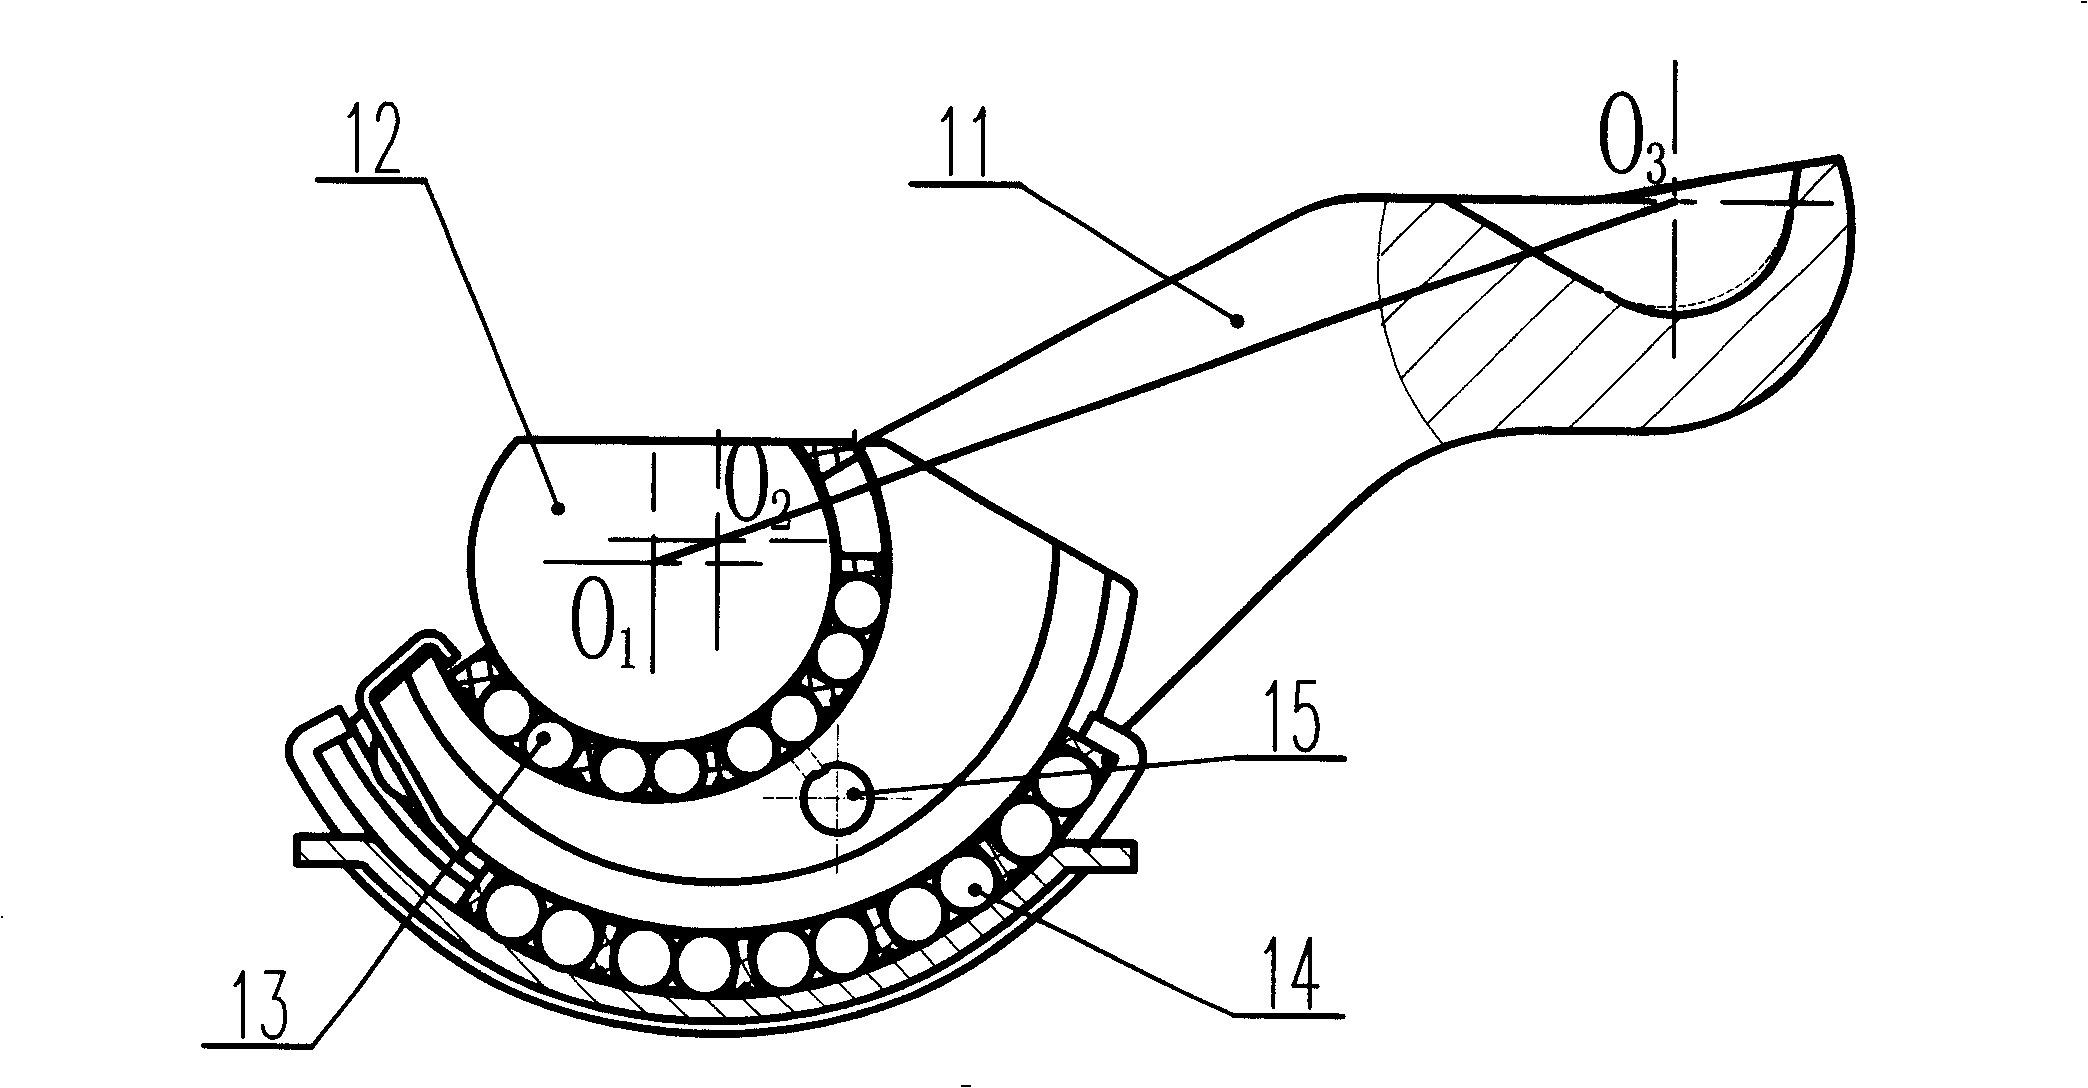 Floating tong type bipushing rod pneumatic disk brake based on rectangular torsional spring single dicrection clutch